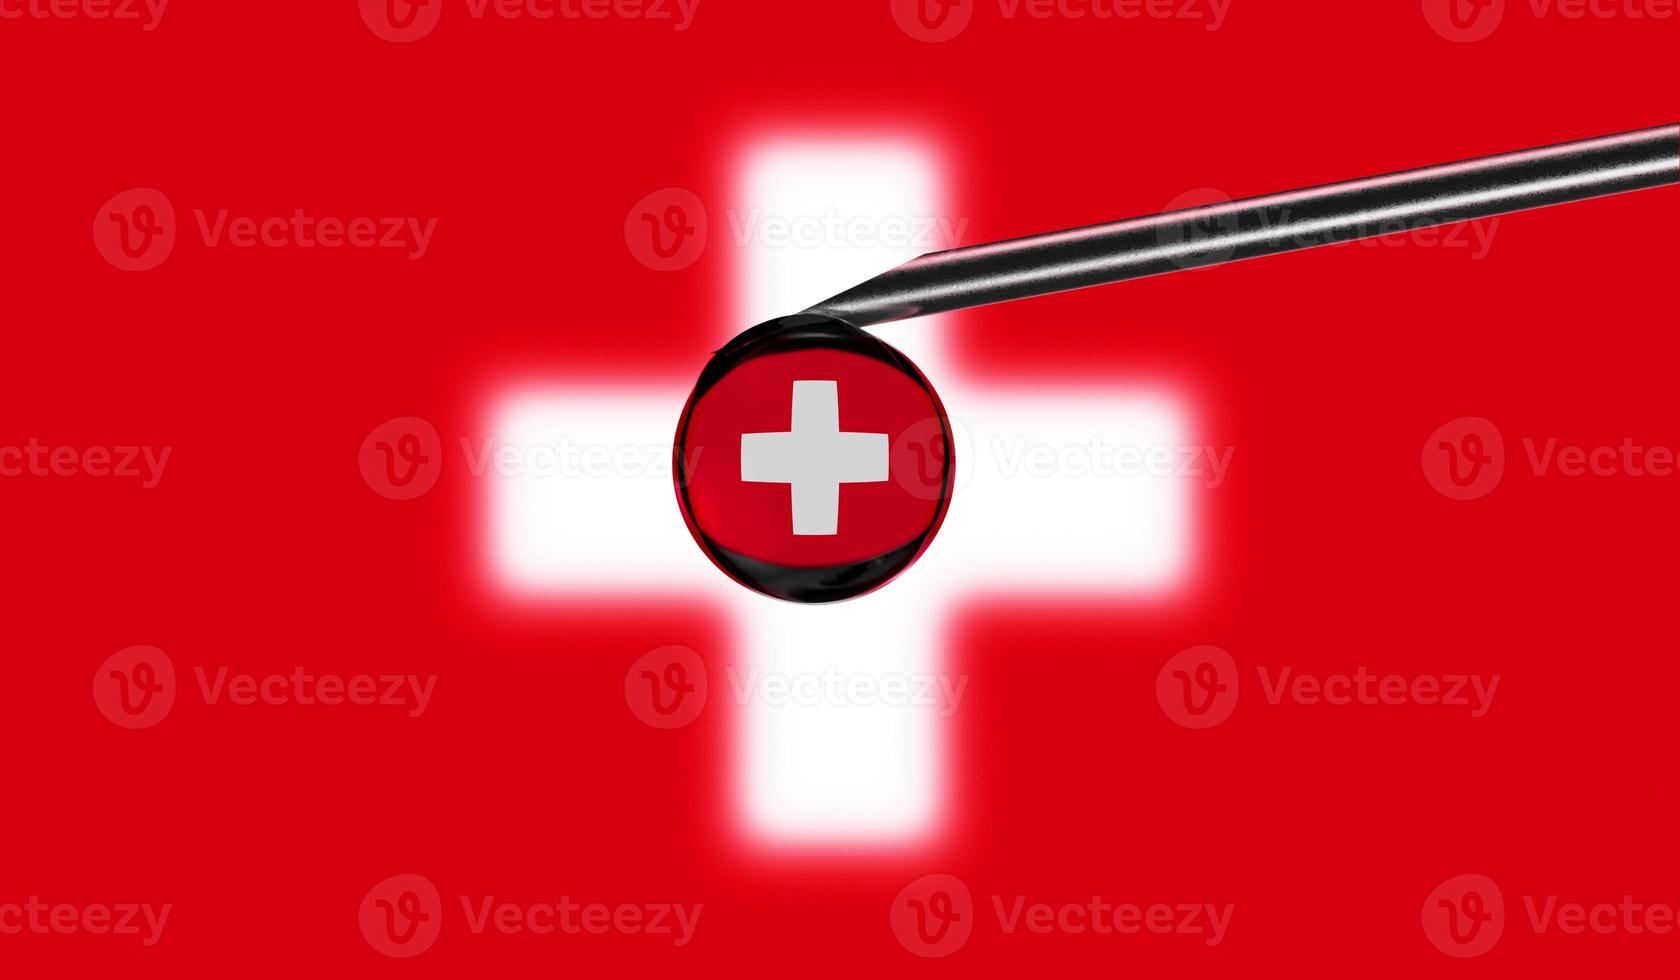 seringue de vaccin avec goutte sur l'aiguille sur fond de drapeau national de la suisse. vaccination de concept médical. protection contre la pandémie de coronavirus sras-cov-2. idée de sécurité nationale. photo